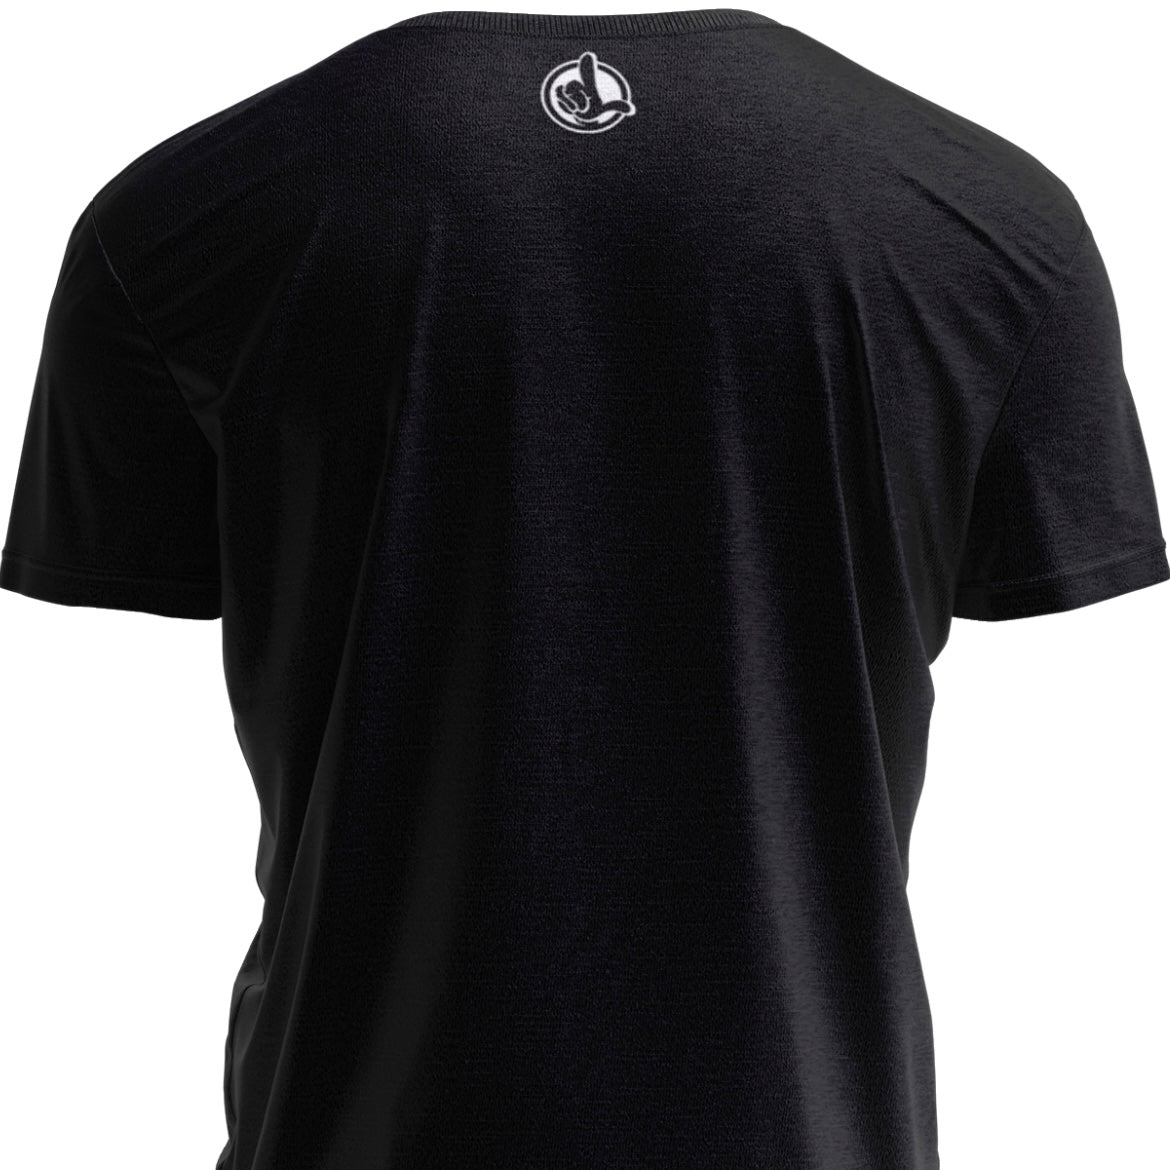 LT Signature T-Shirt (Black)